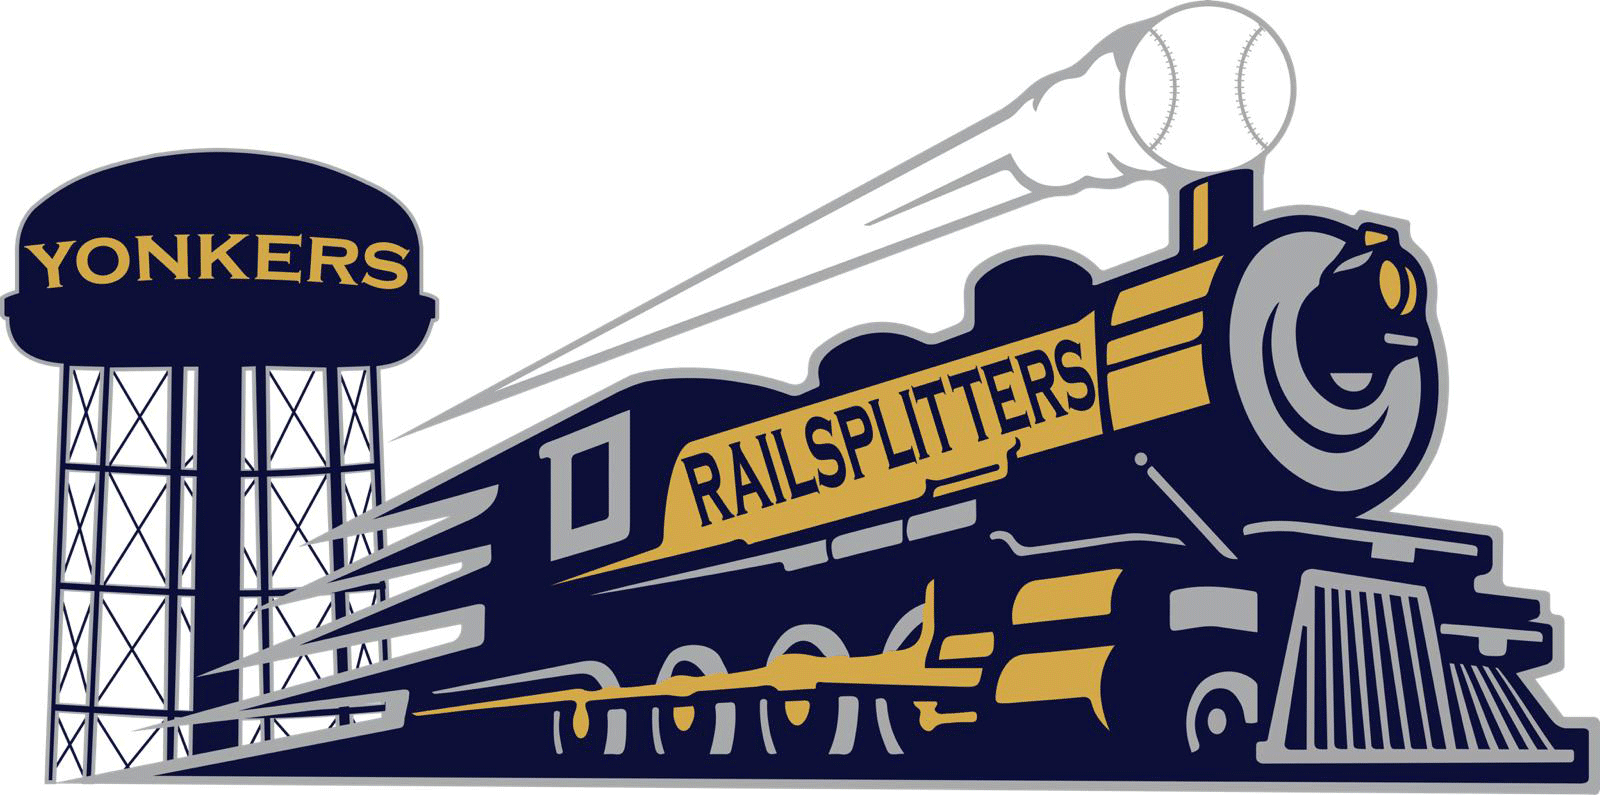 Locomotive Logo - Railsplitters Update Logos | Yonkers Railsplitters Baseball Club ...